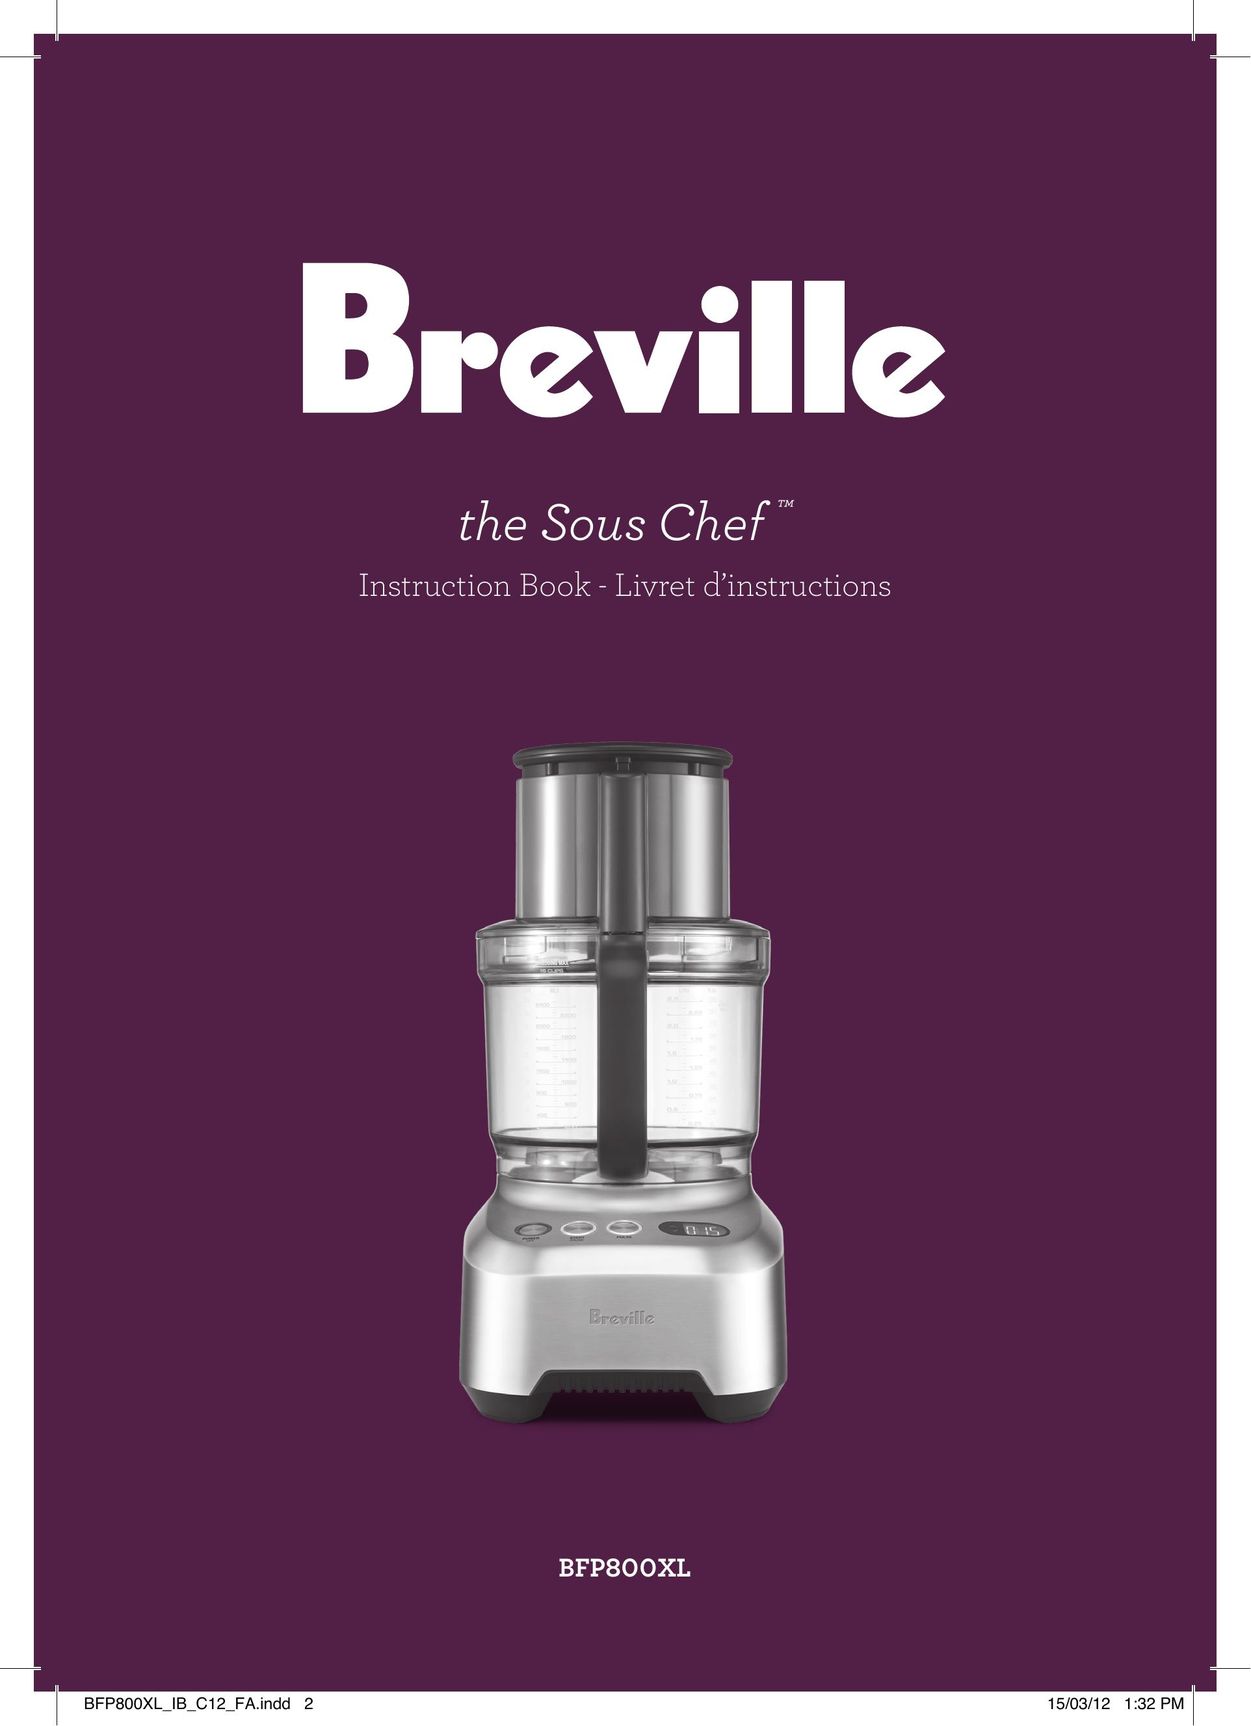 Breville BFP800XL Blender User Manual